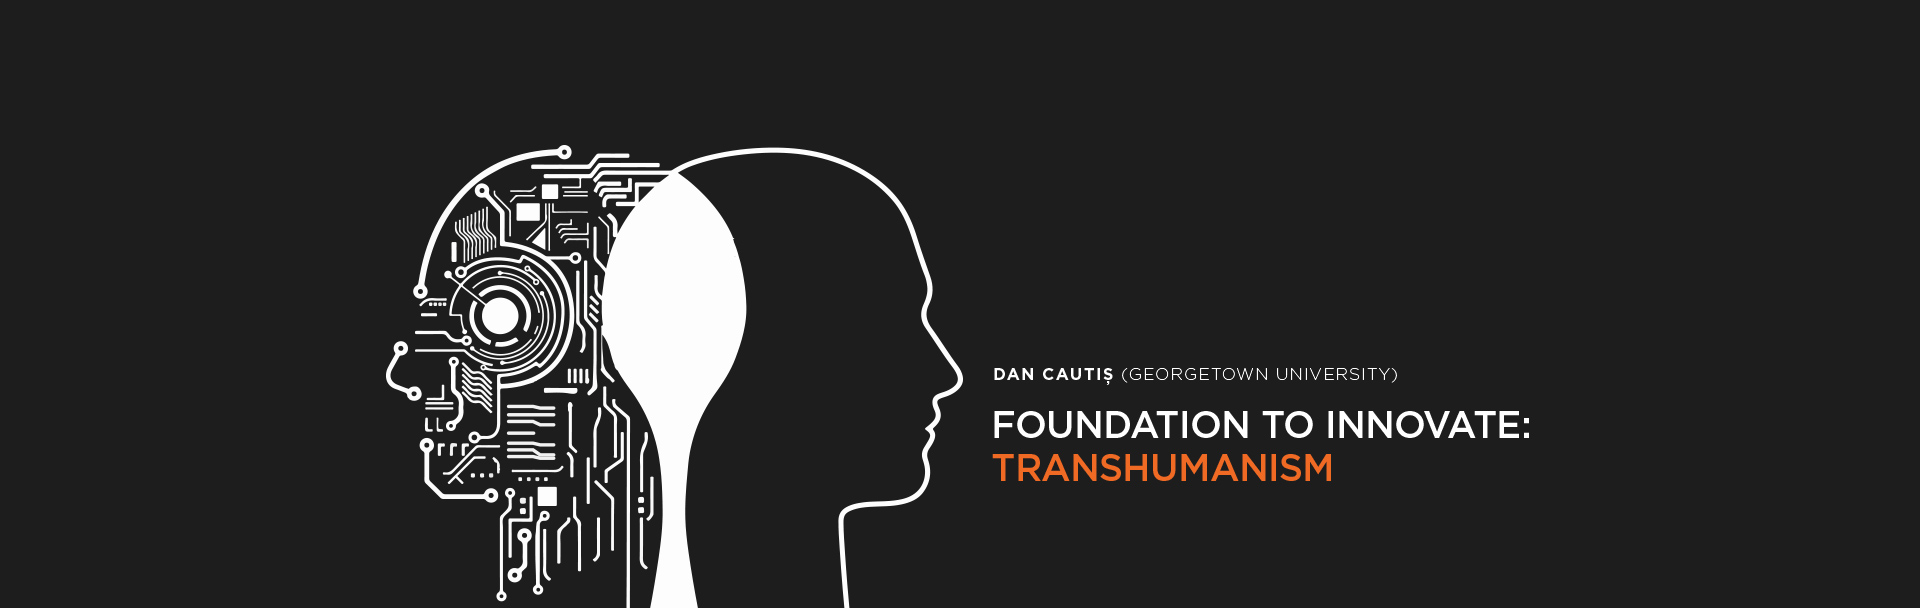 QUALITALKS #4: Dan Cautis, Transhumanism